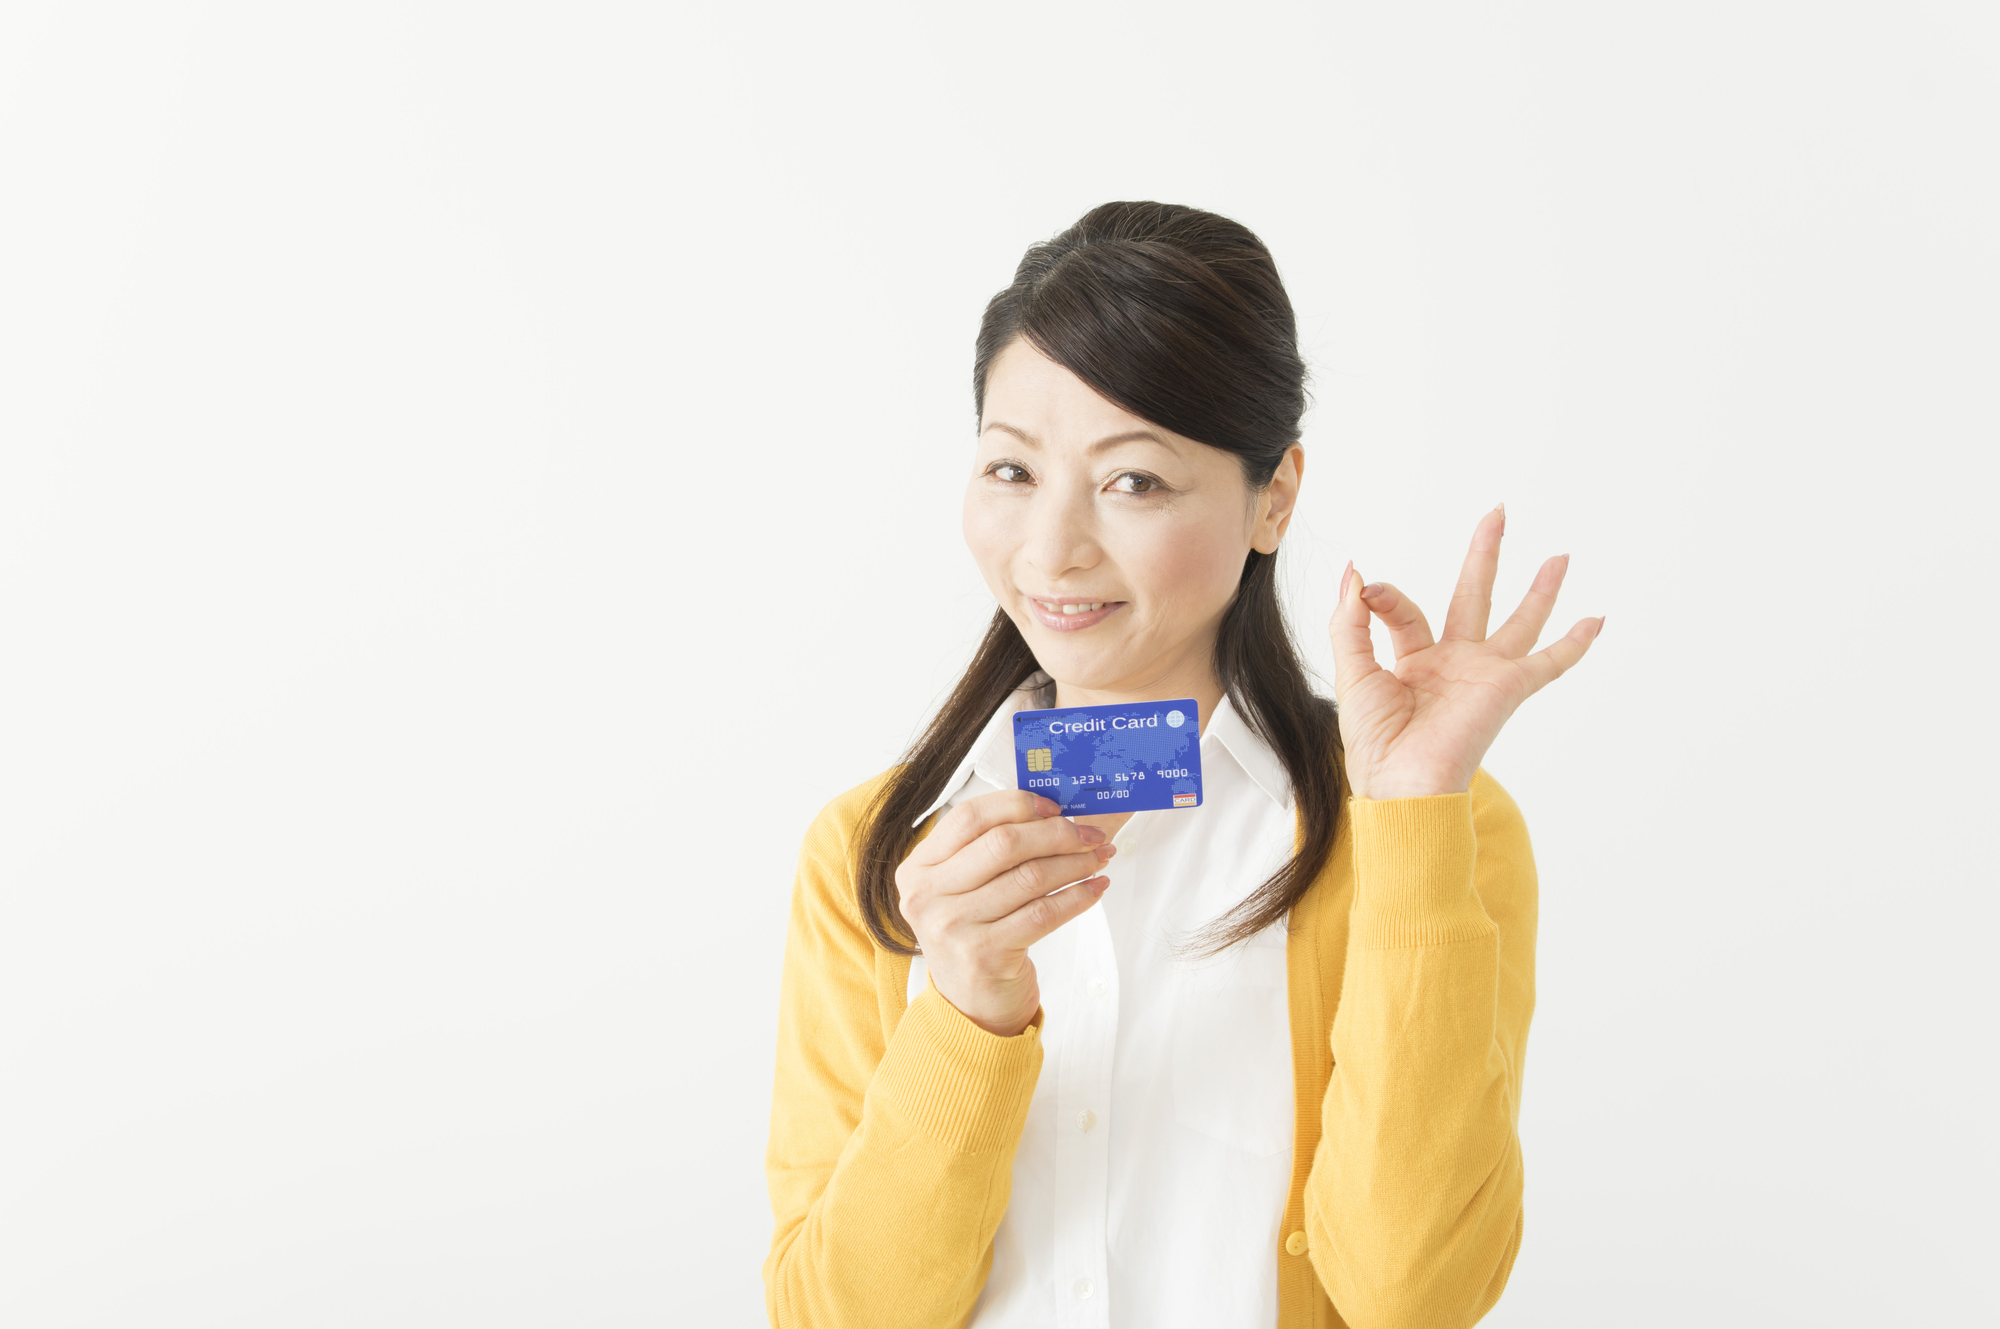 北海道銀行のクレジットカードは便利な機能がいっぱい